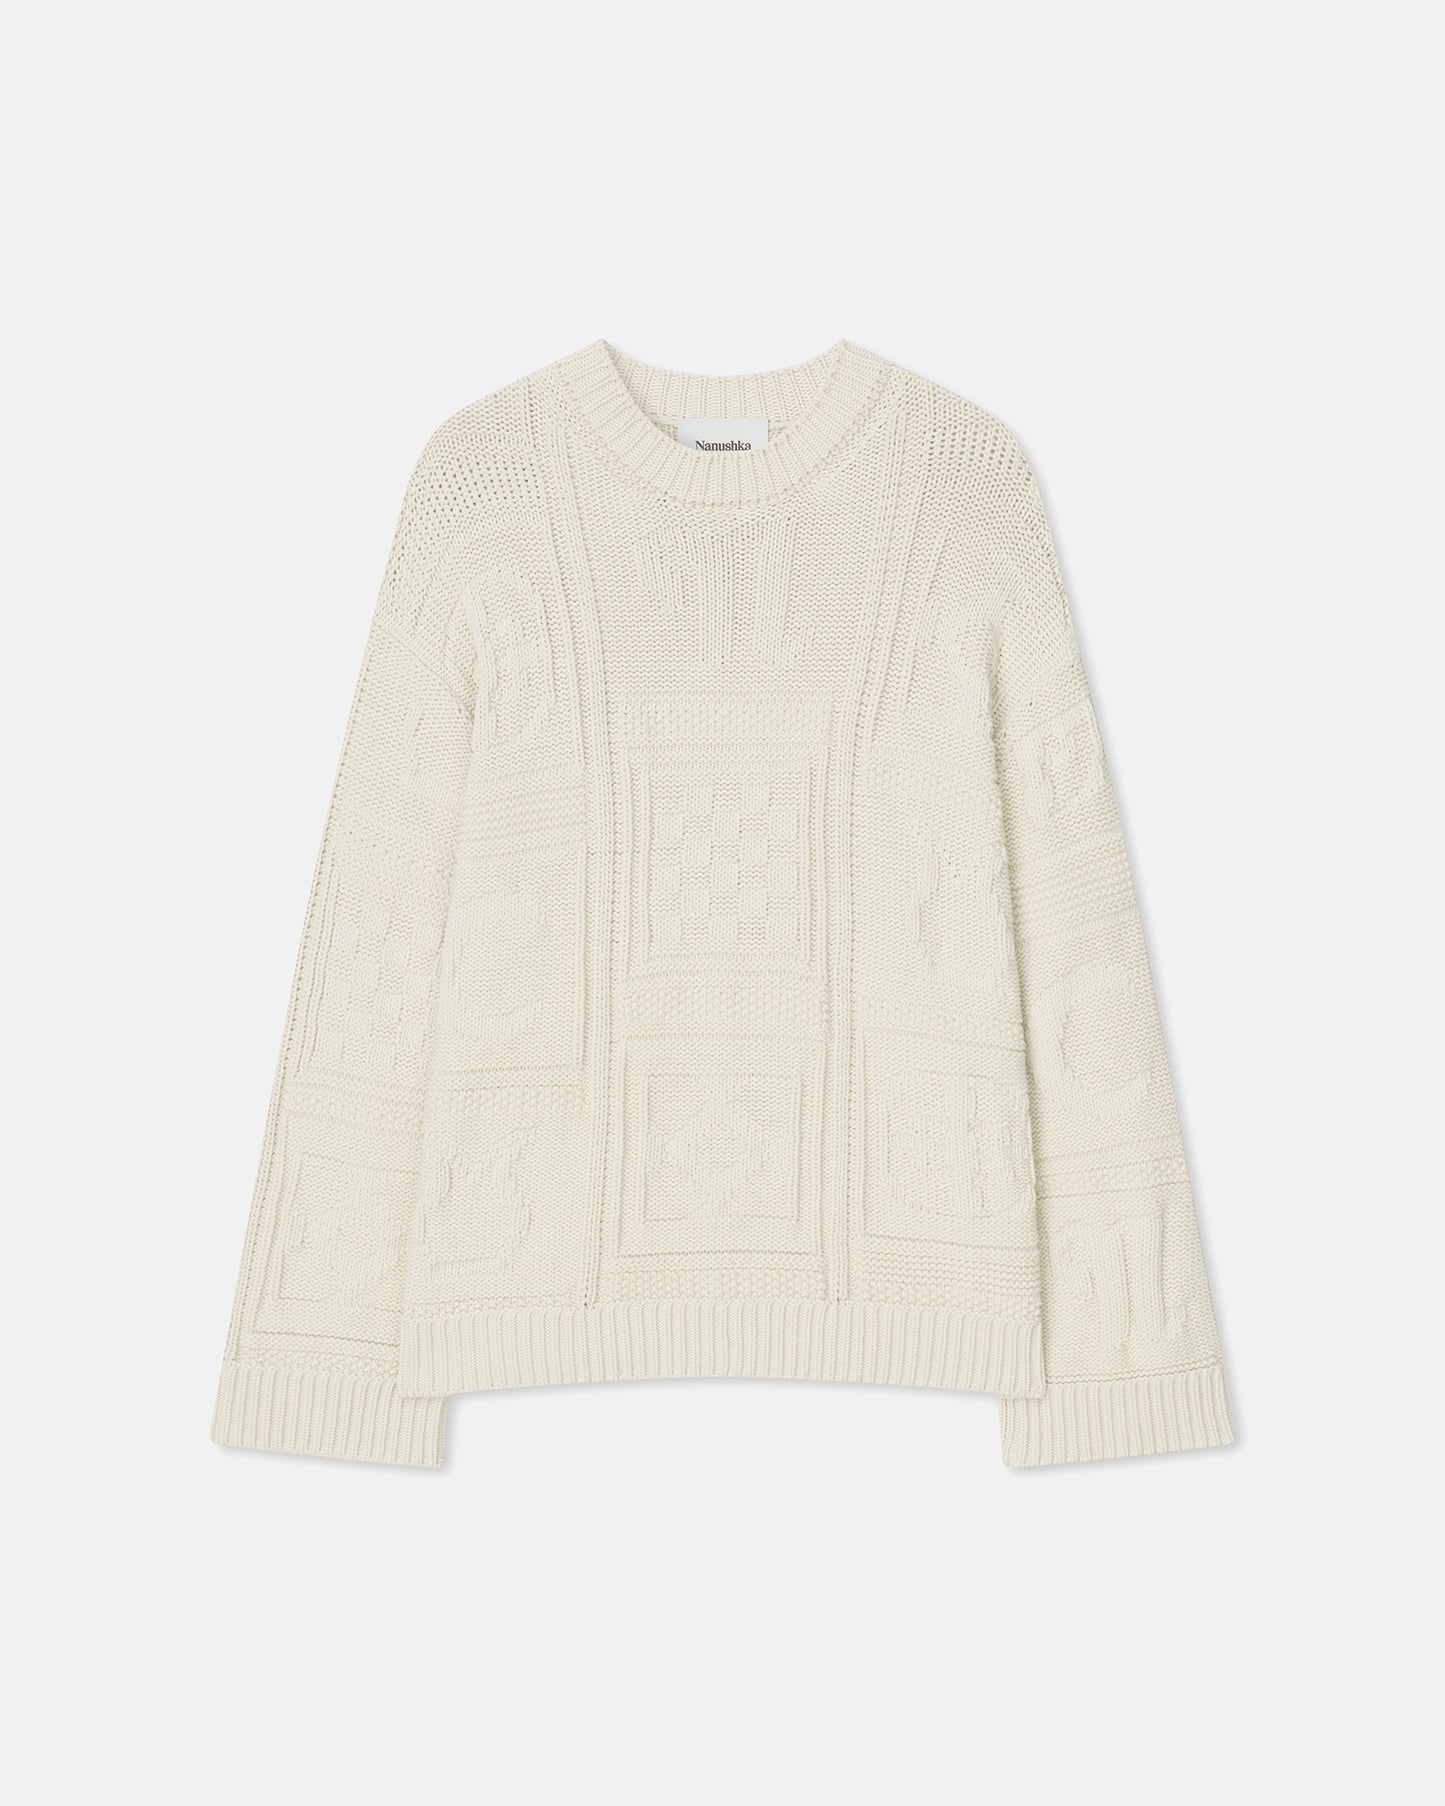 Nicolle - Cotton-Blend Sweater - Creme Cashmere Merino